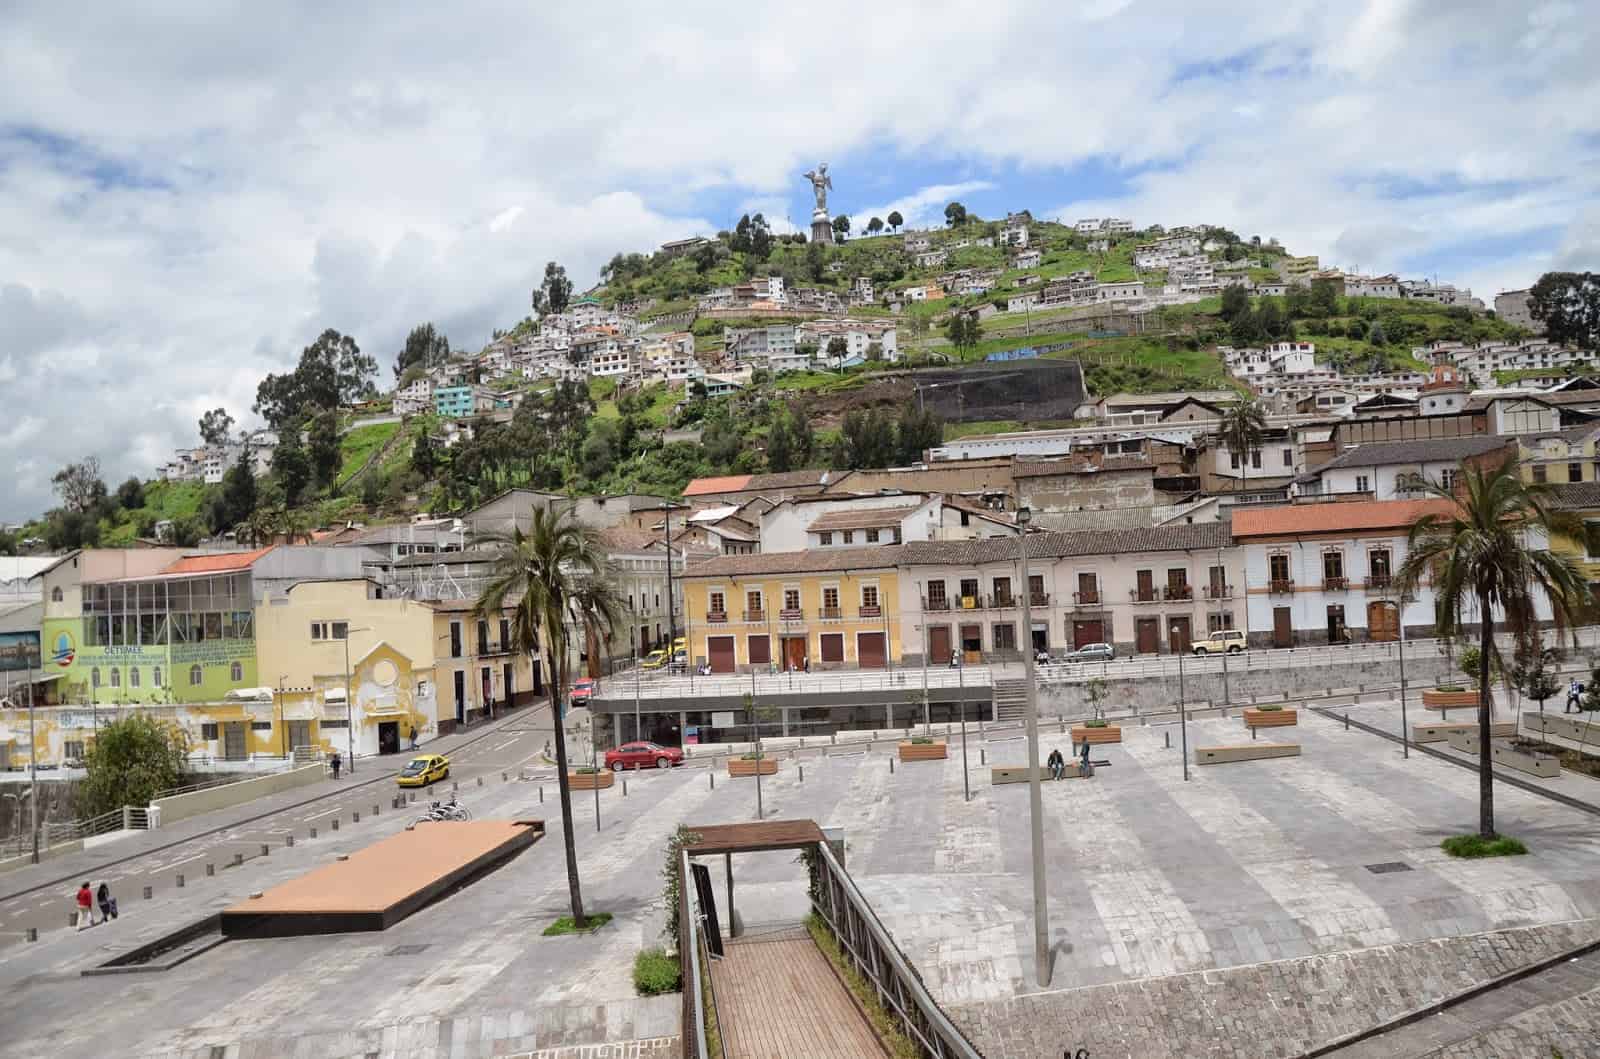 El Panecillo in Quito, Ecuador